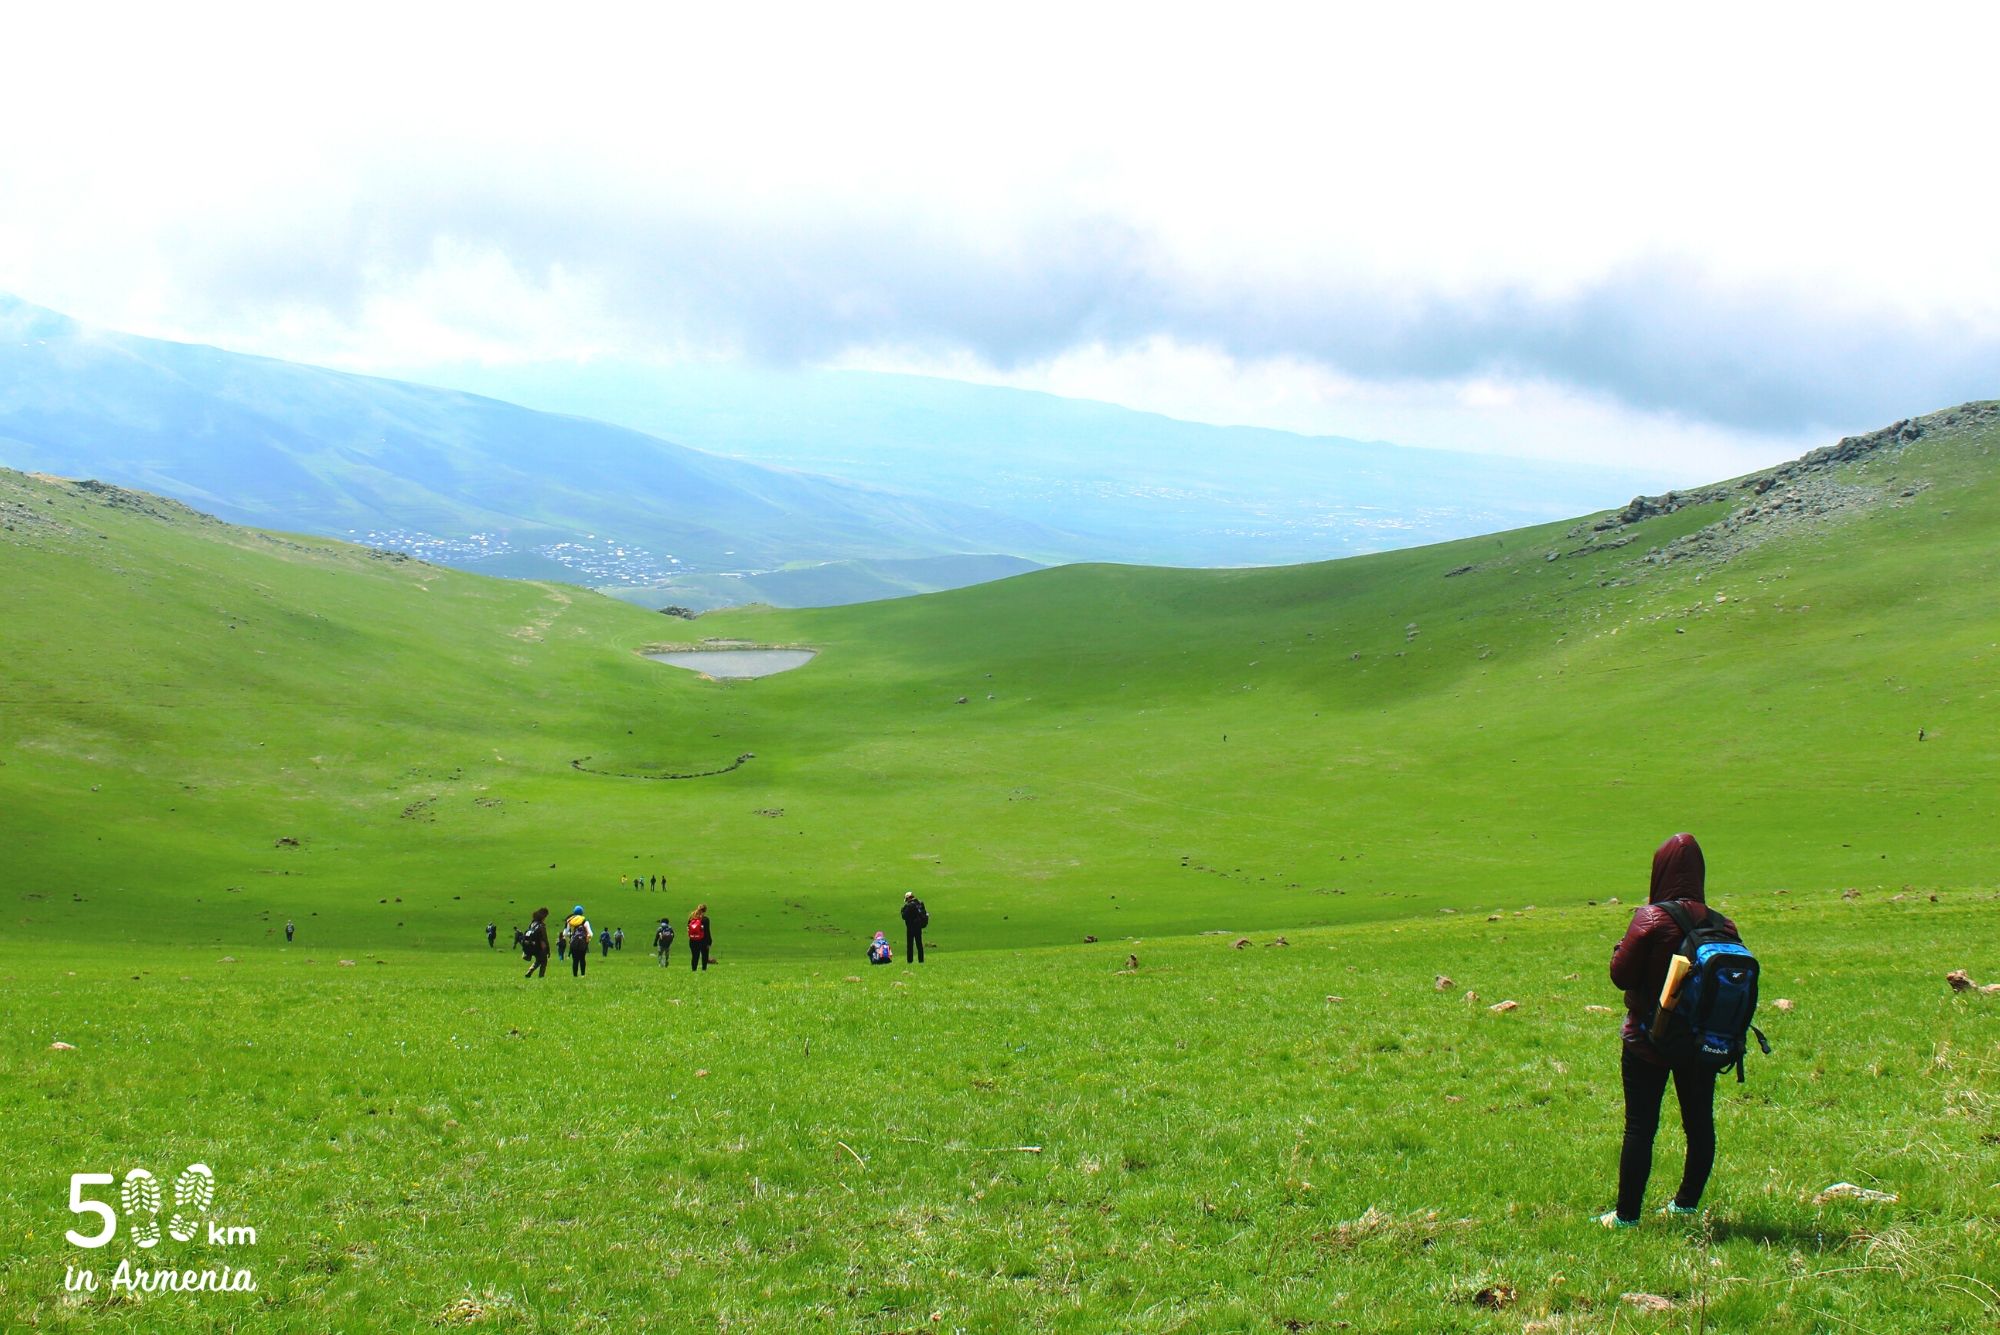 Գութանասար - 500 կմ Հայաստանում